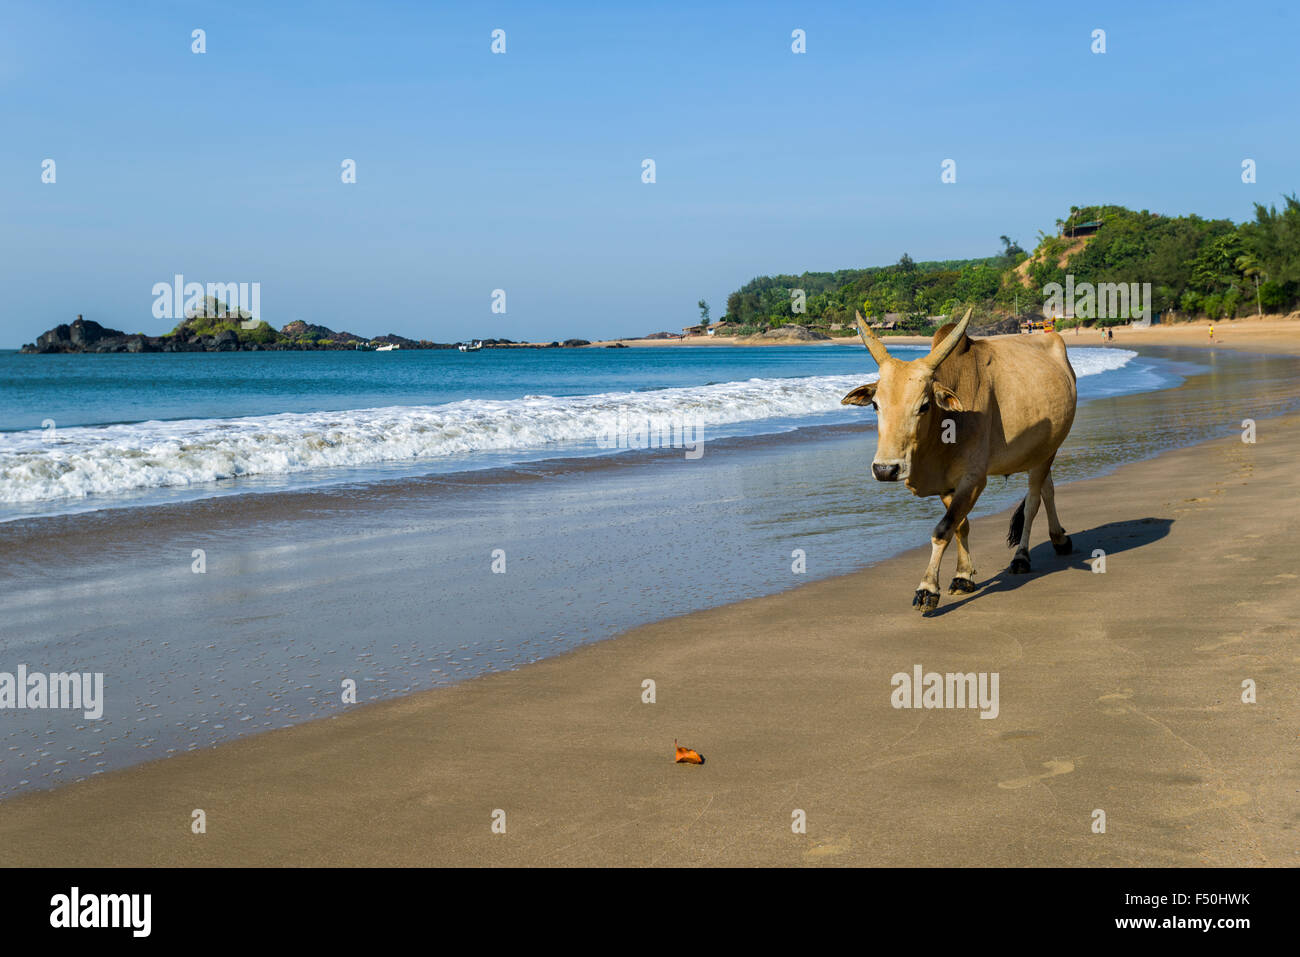 Una vacca sacra è a piedi lungo la spiaggia di om con cielo blu, palme, sabbia bianca e mare blu, una delle famose spiagge vicino a te Foto Stock